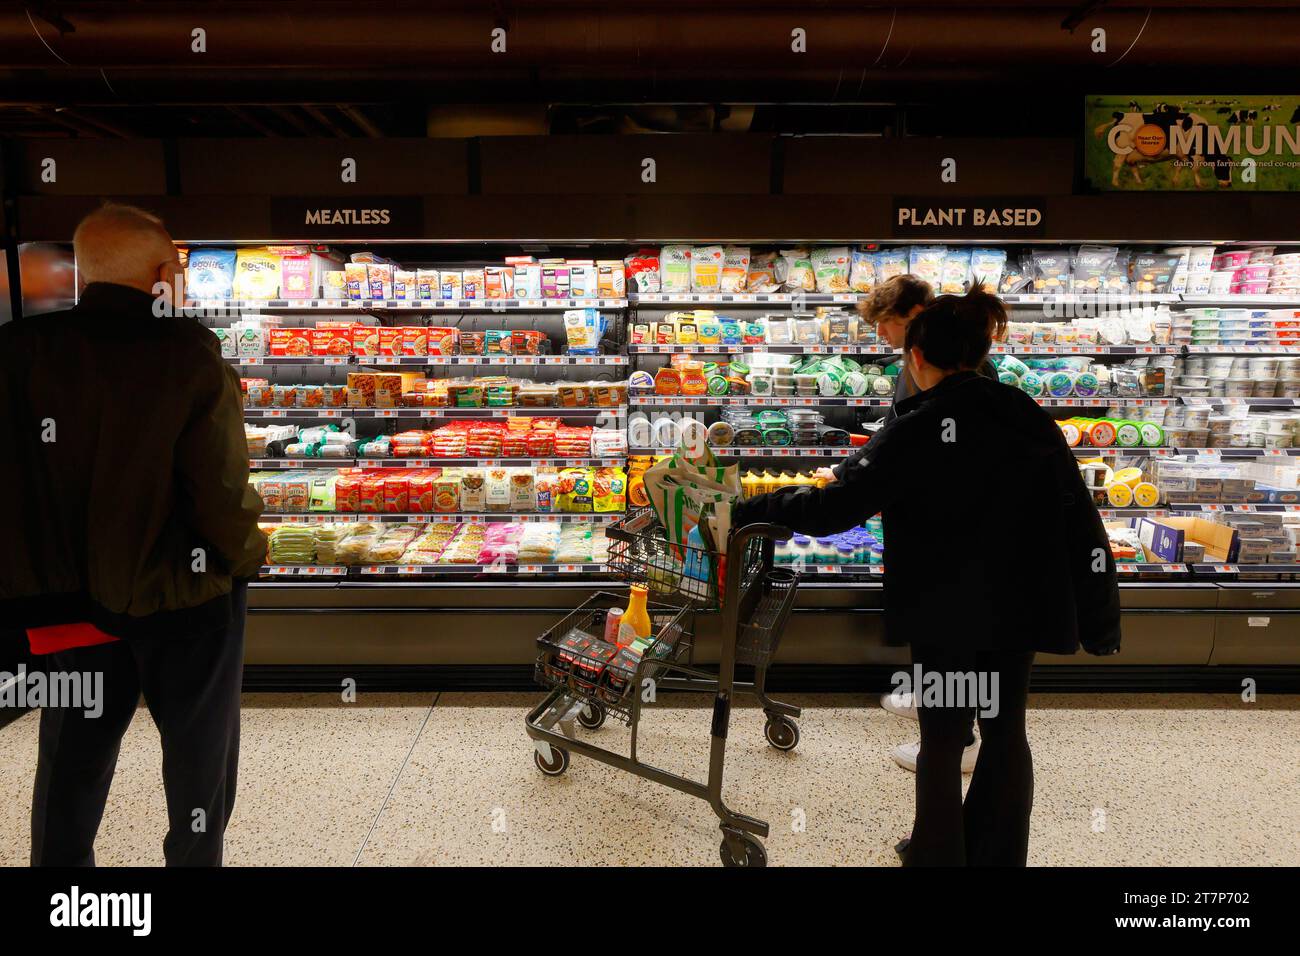 Gli acquirenti potranno curiosare tra i prodotti alimentari crudi e vegetali preparati vegani disponibili in un supermercato di New York City Foto Stock